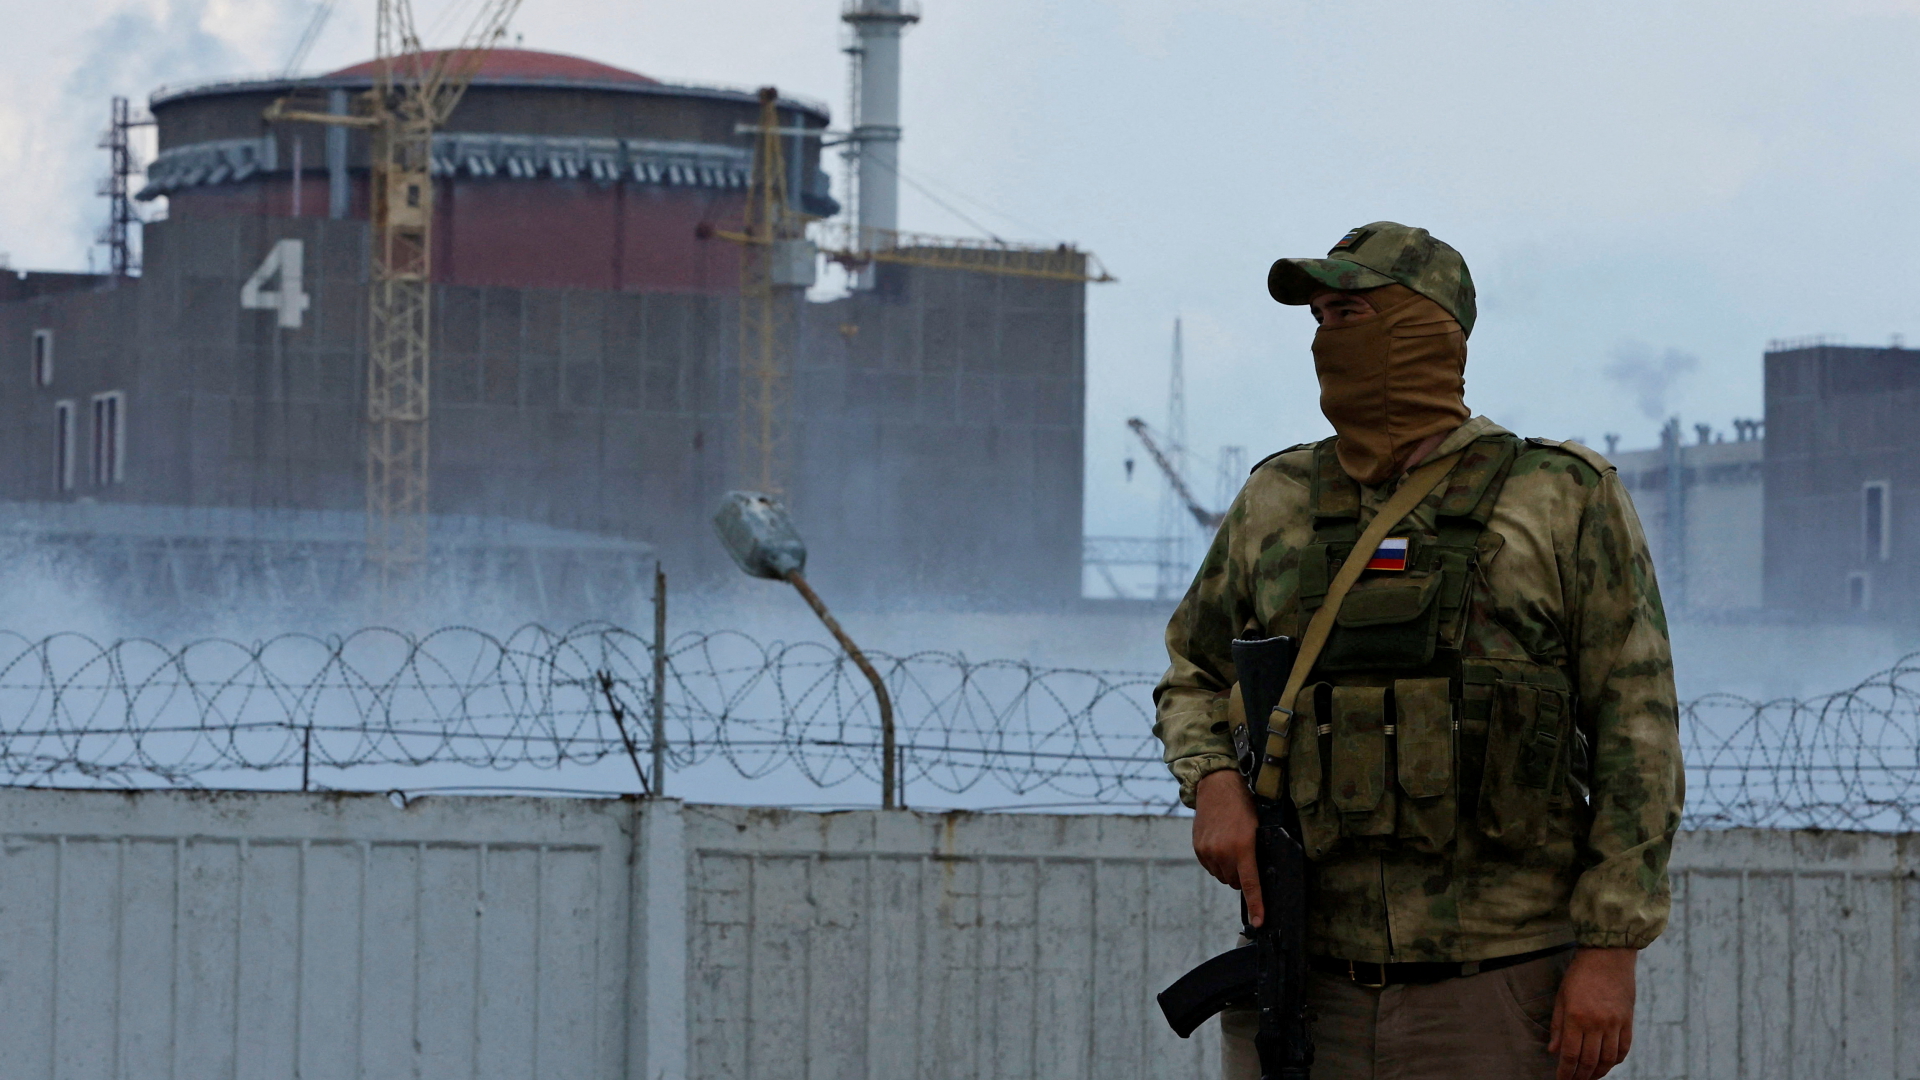 Ein Soldat mit russischer Flagge auf der Uniform vor dem ukrainischen Atomkraftwerk Saporischschja.